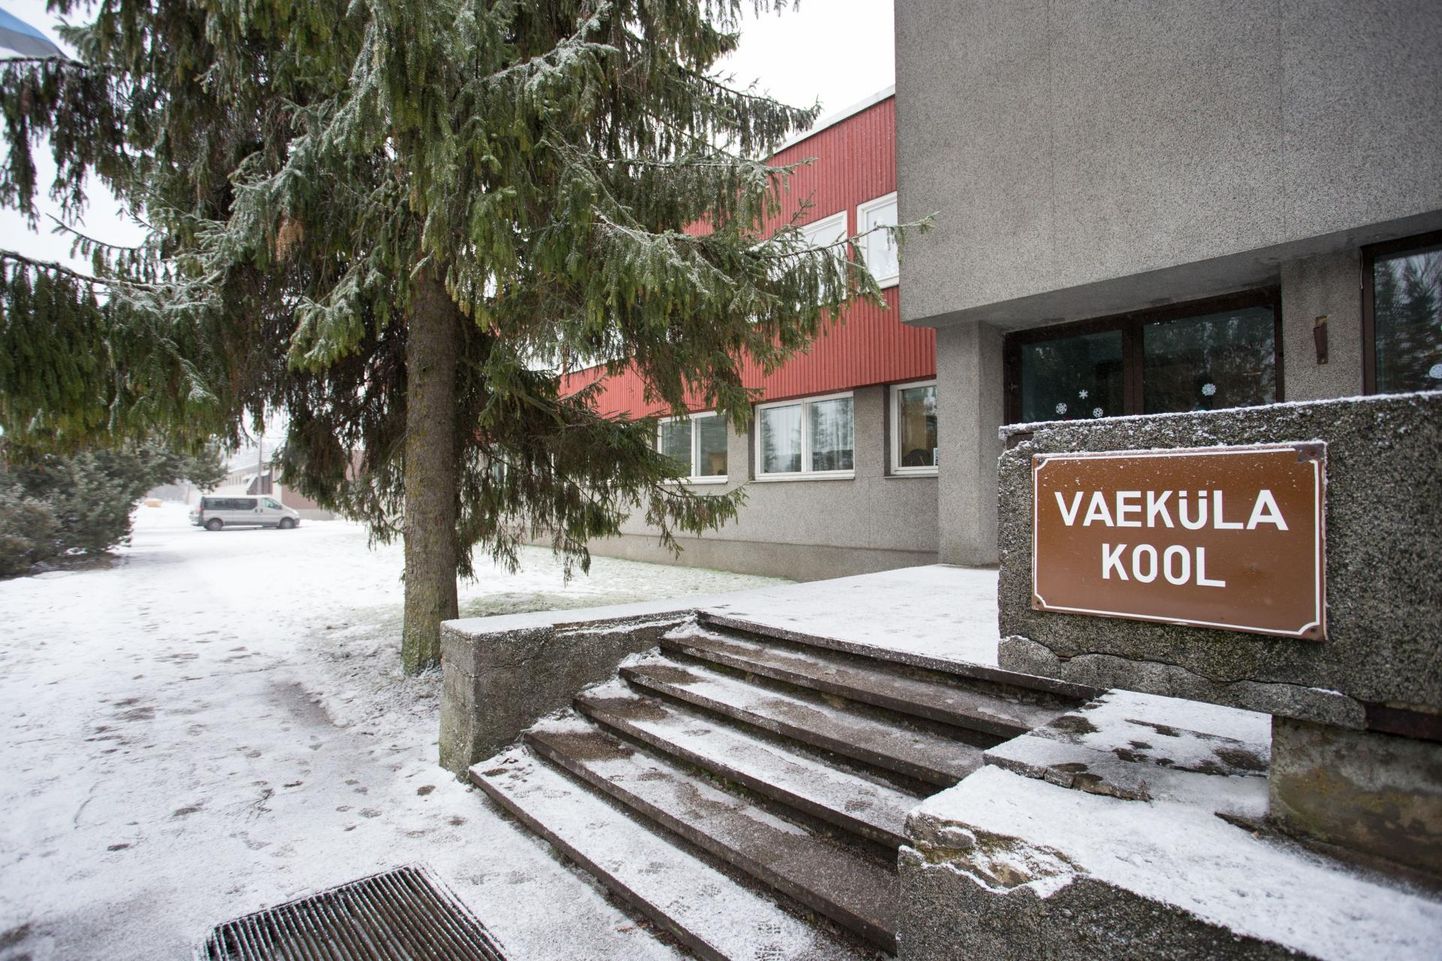 Vaeküla koolist saab Näpi õppekeskus.